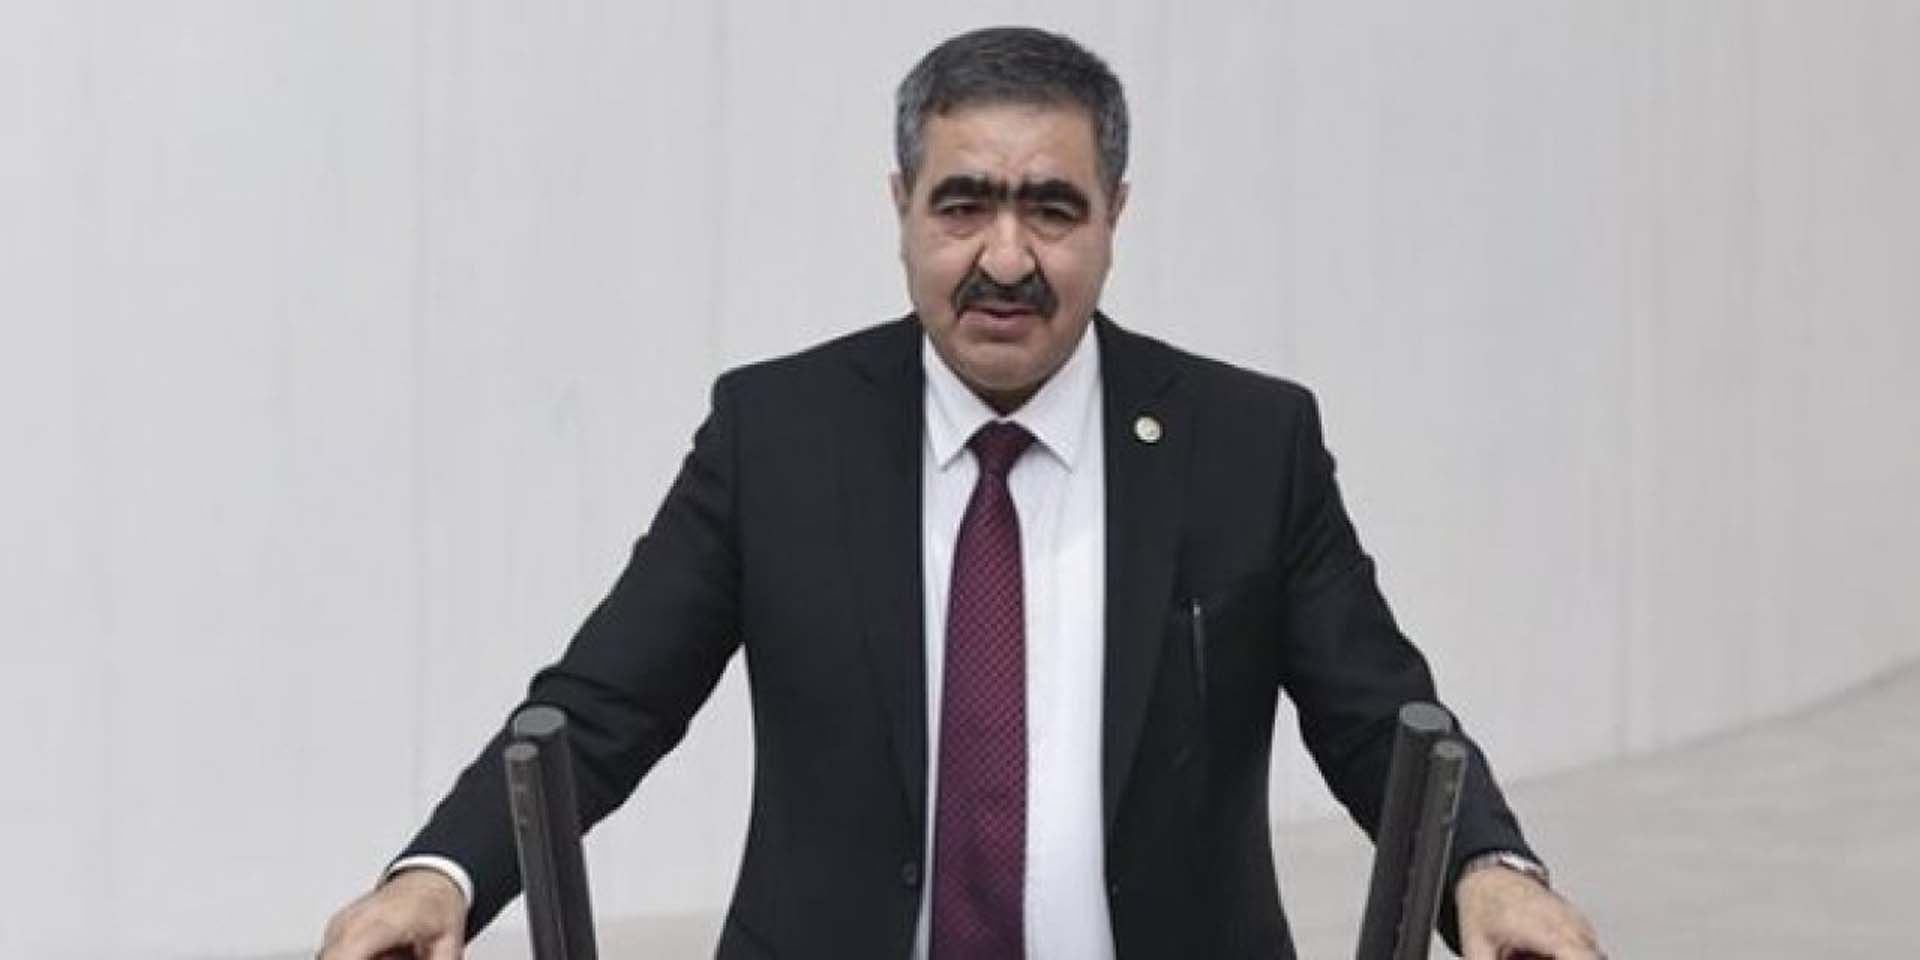 İYİ Partili vekil İbrahim Halil Oral, altılı masayı karıştırdı! Kılıçdaroğlu'nun adaylığına karşı çıktı, Akşener'in danışmanı sert çıktı 